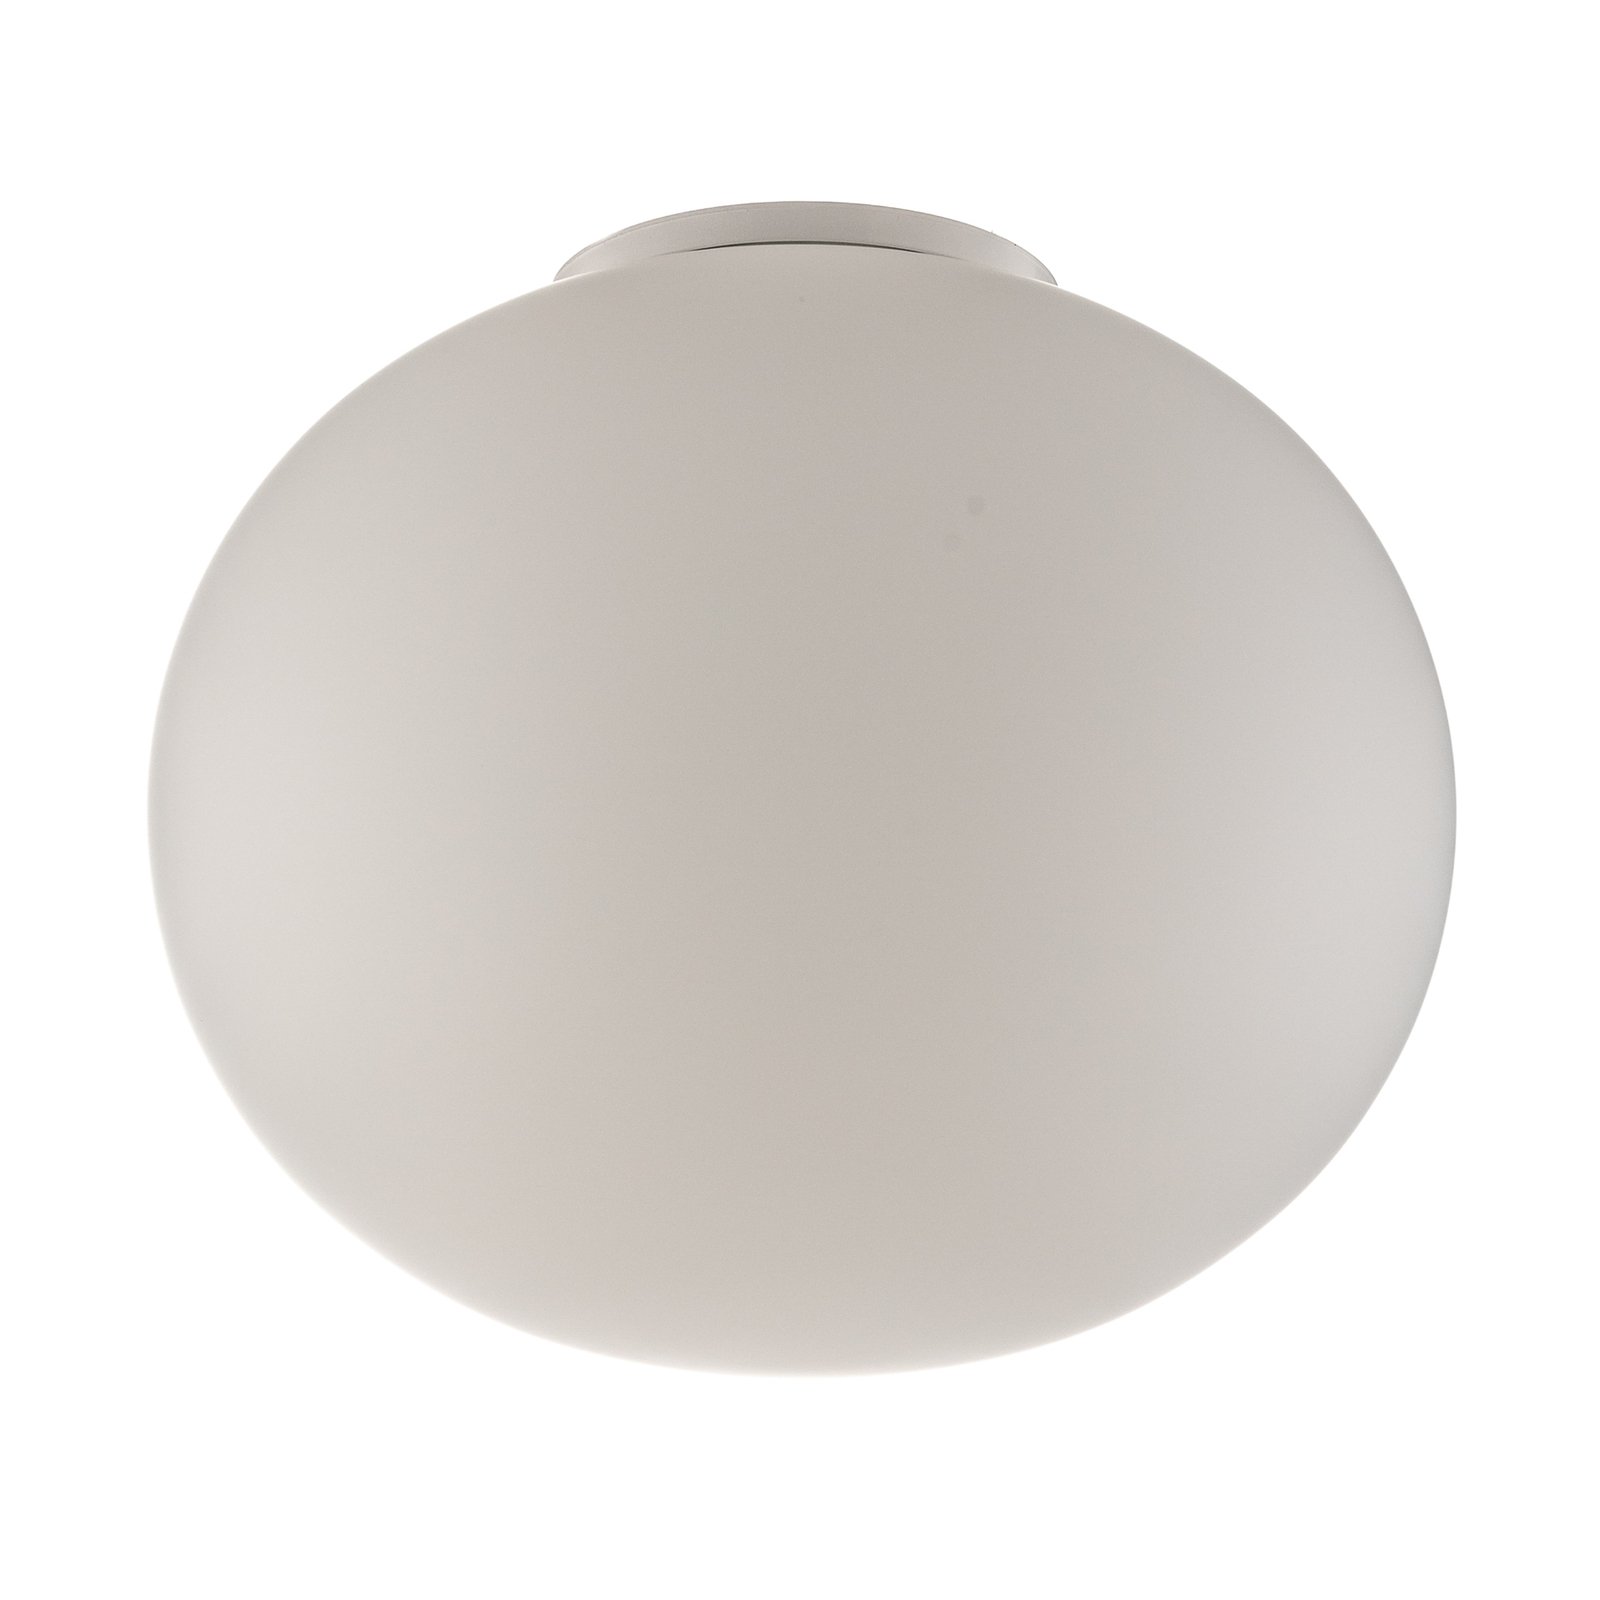 FLOS Glo-Ball C/W Zero stropné svietidlo